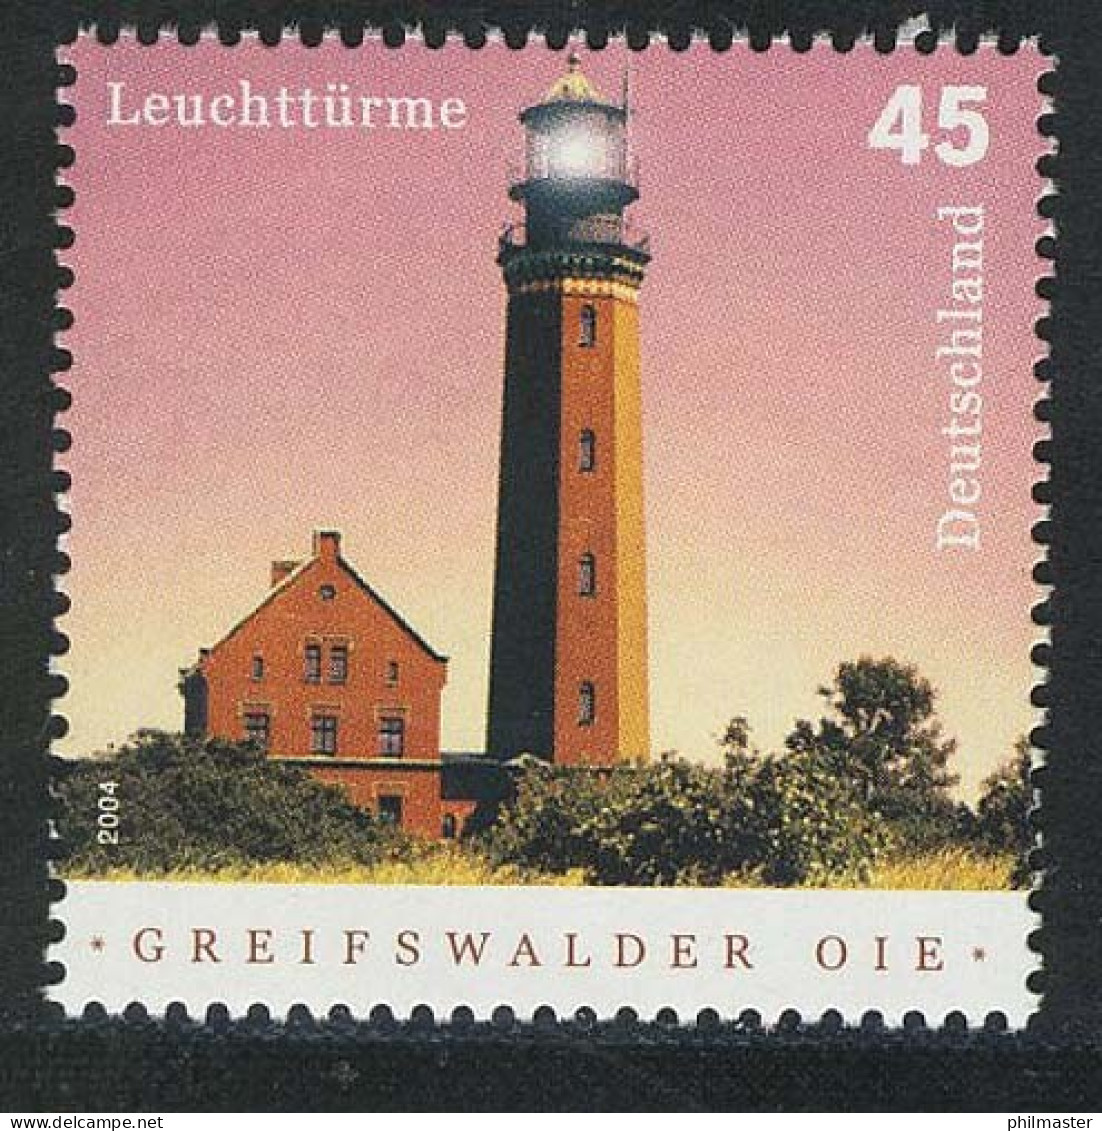 2409 Leuchtturm Greifswalder Oie, 10 Einzelmarken, Alle Postfrisch ** / MNH - Nuevos